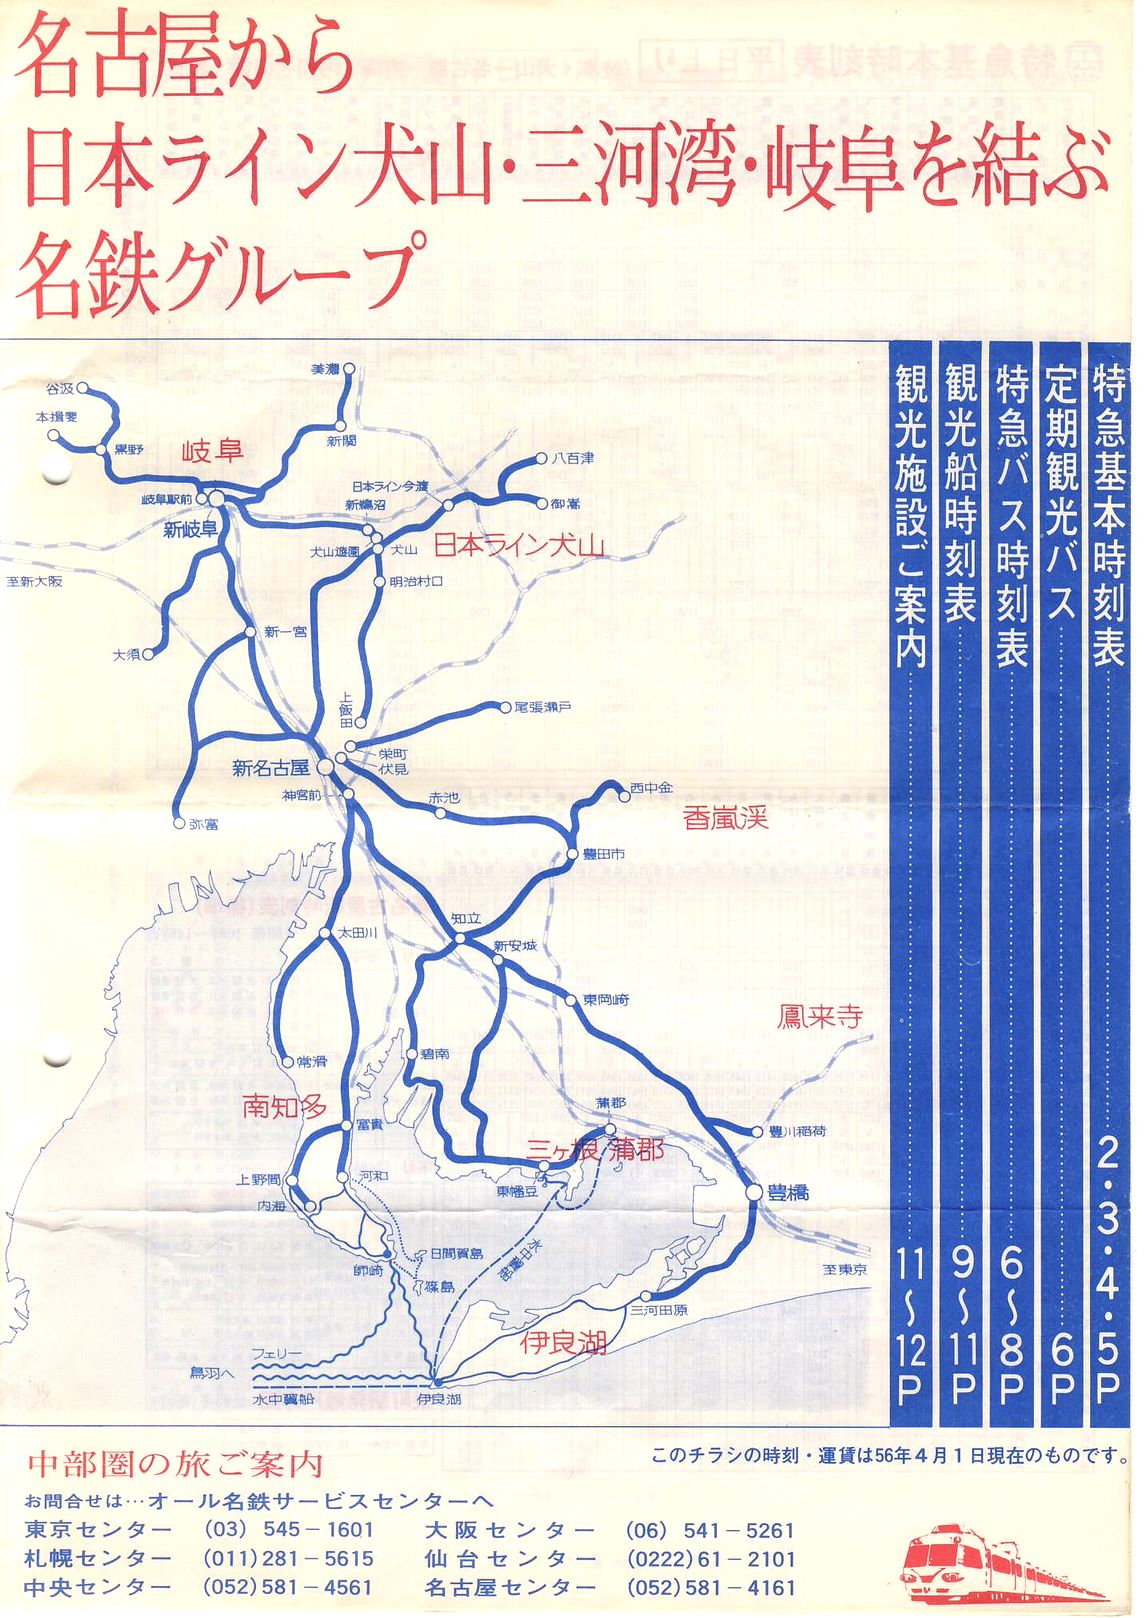 1981-04-01現在_名古屋鉄道_中部圏の旅のご案内(チラシ)_表紙